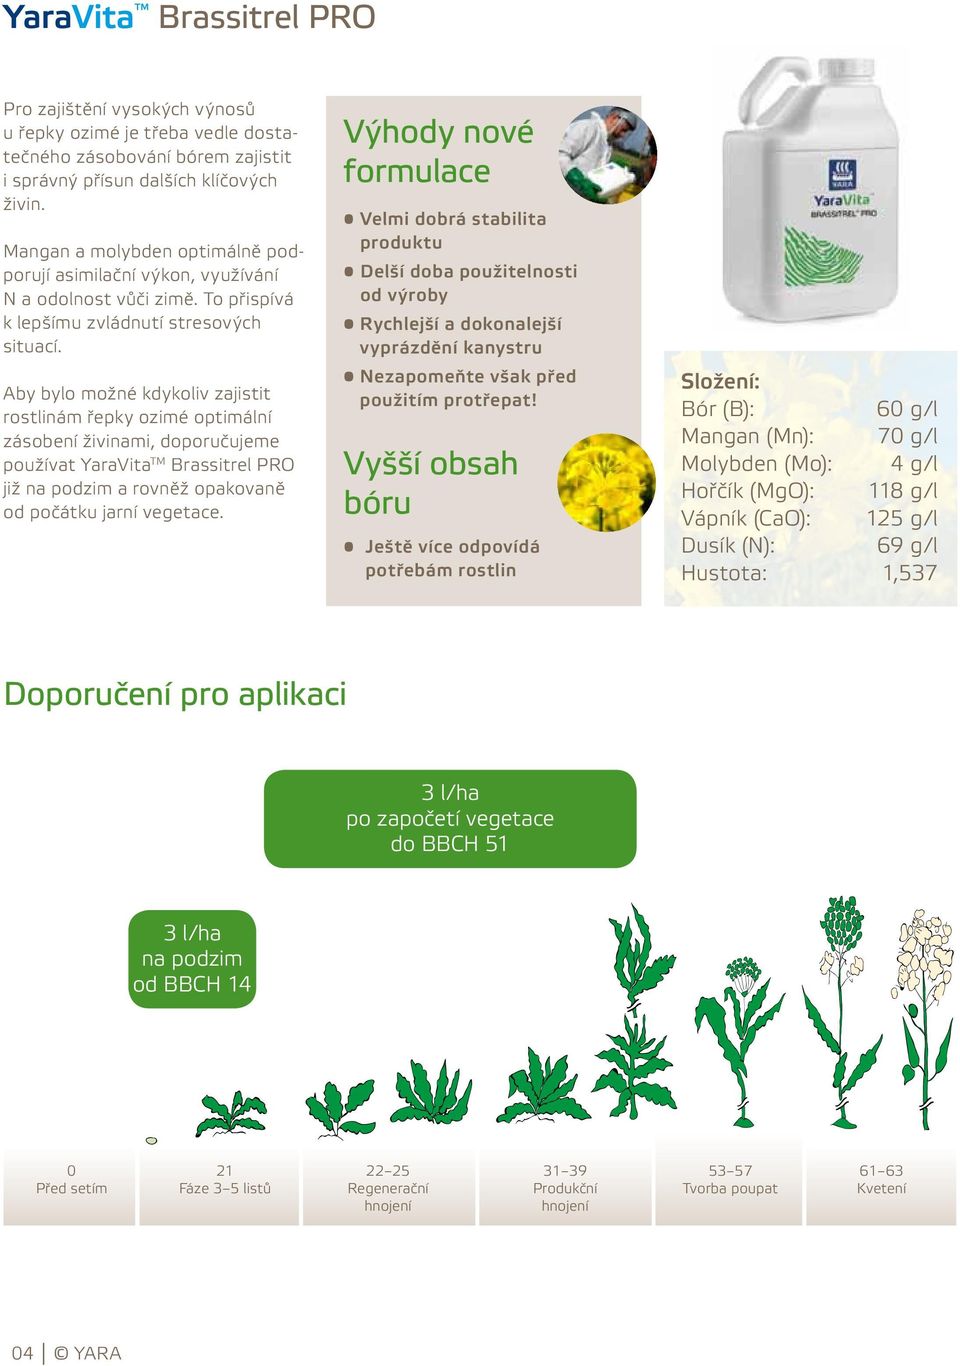 Aby bylo možné kdykoliv zajistit rostlinám řepky ozimé optimální zásobení živinami, doporučujeme používat Brassitrel PRO již na podzim a rovněž opakovaně od počátku jarní vegetace.